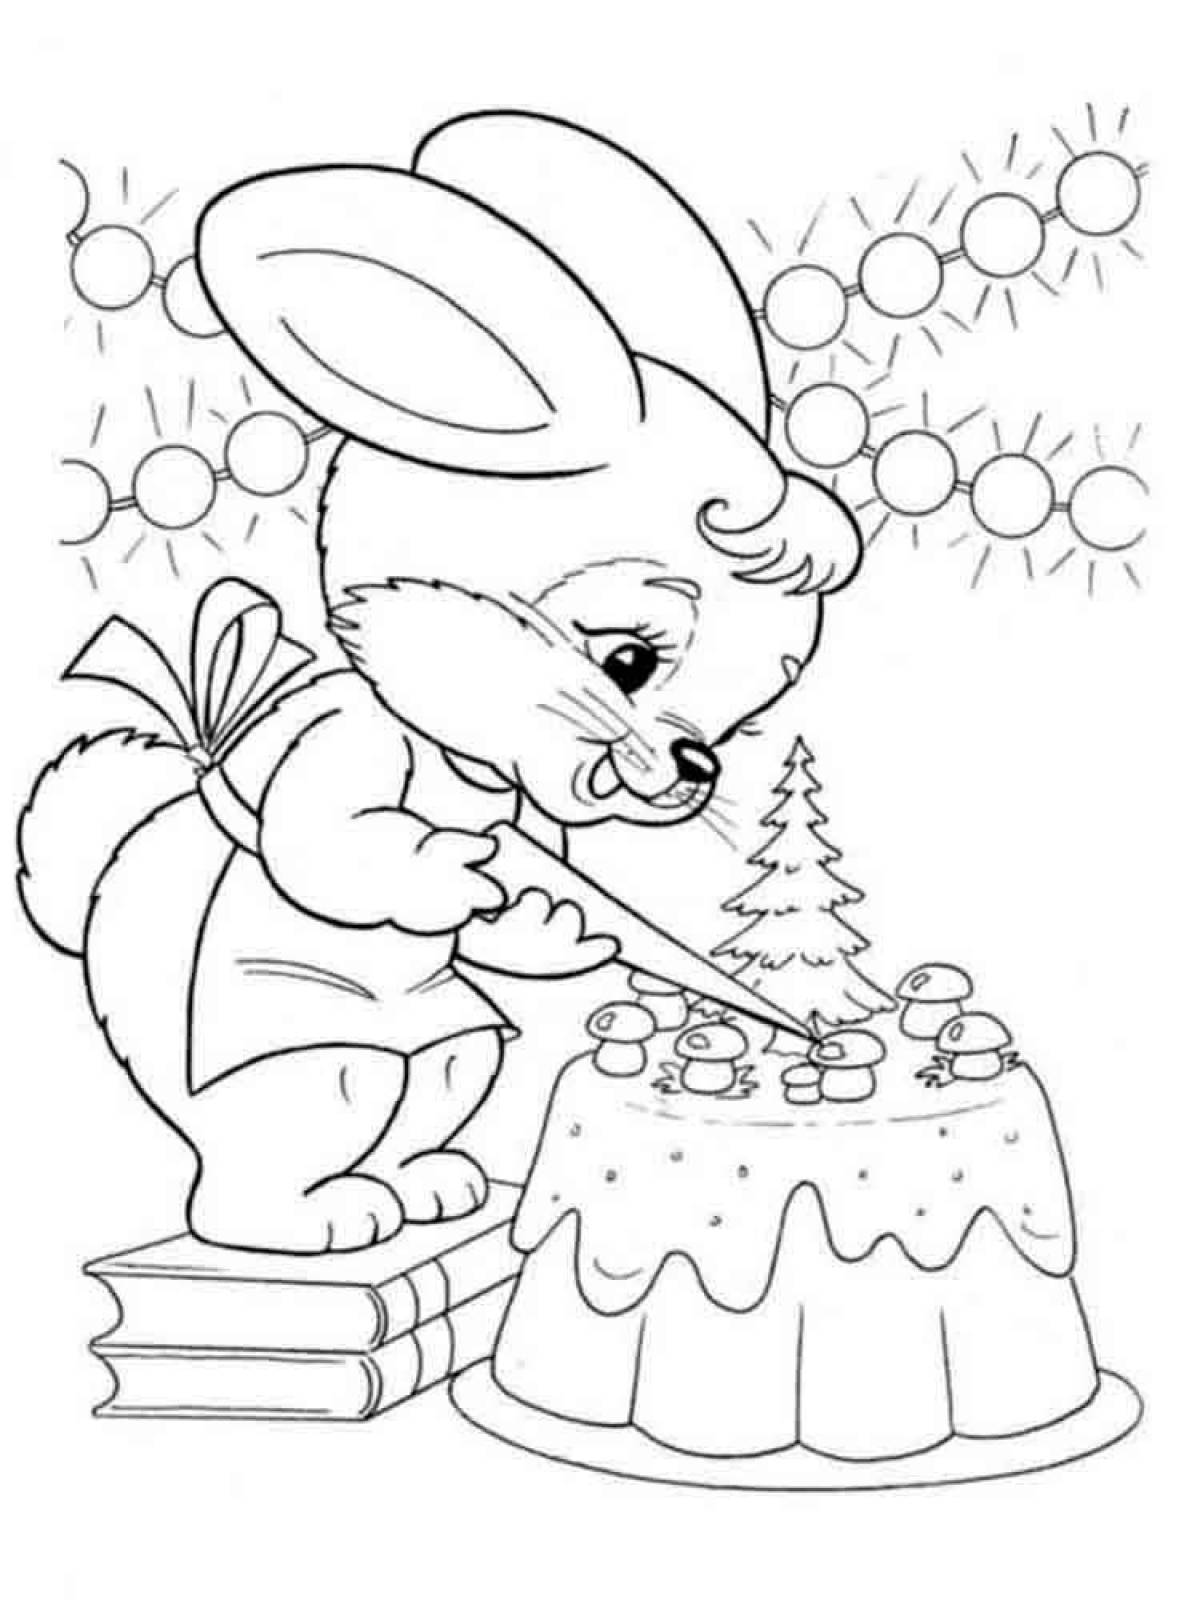 Live coloring christmas bunny